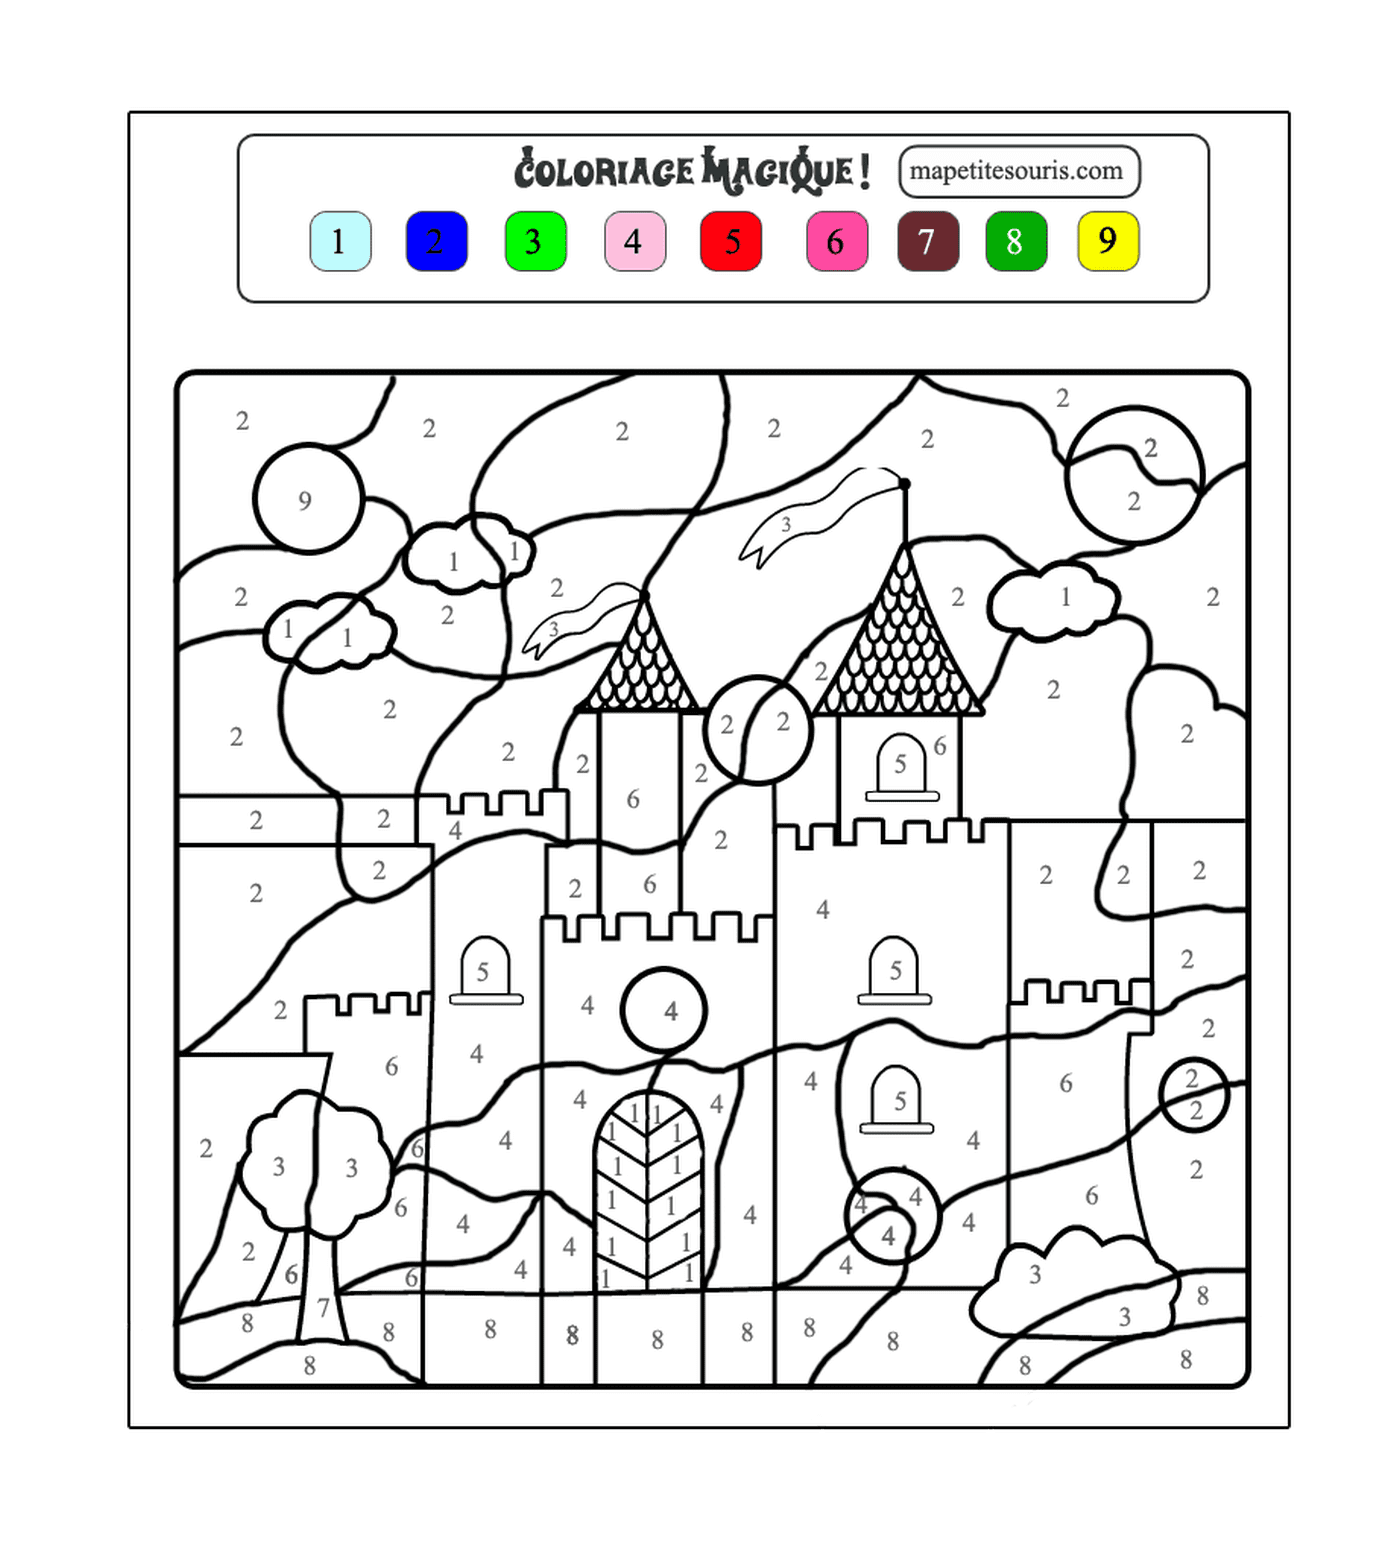  Folha de exercício de colorir número para crianças com um castelo 